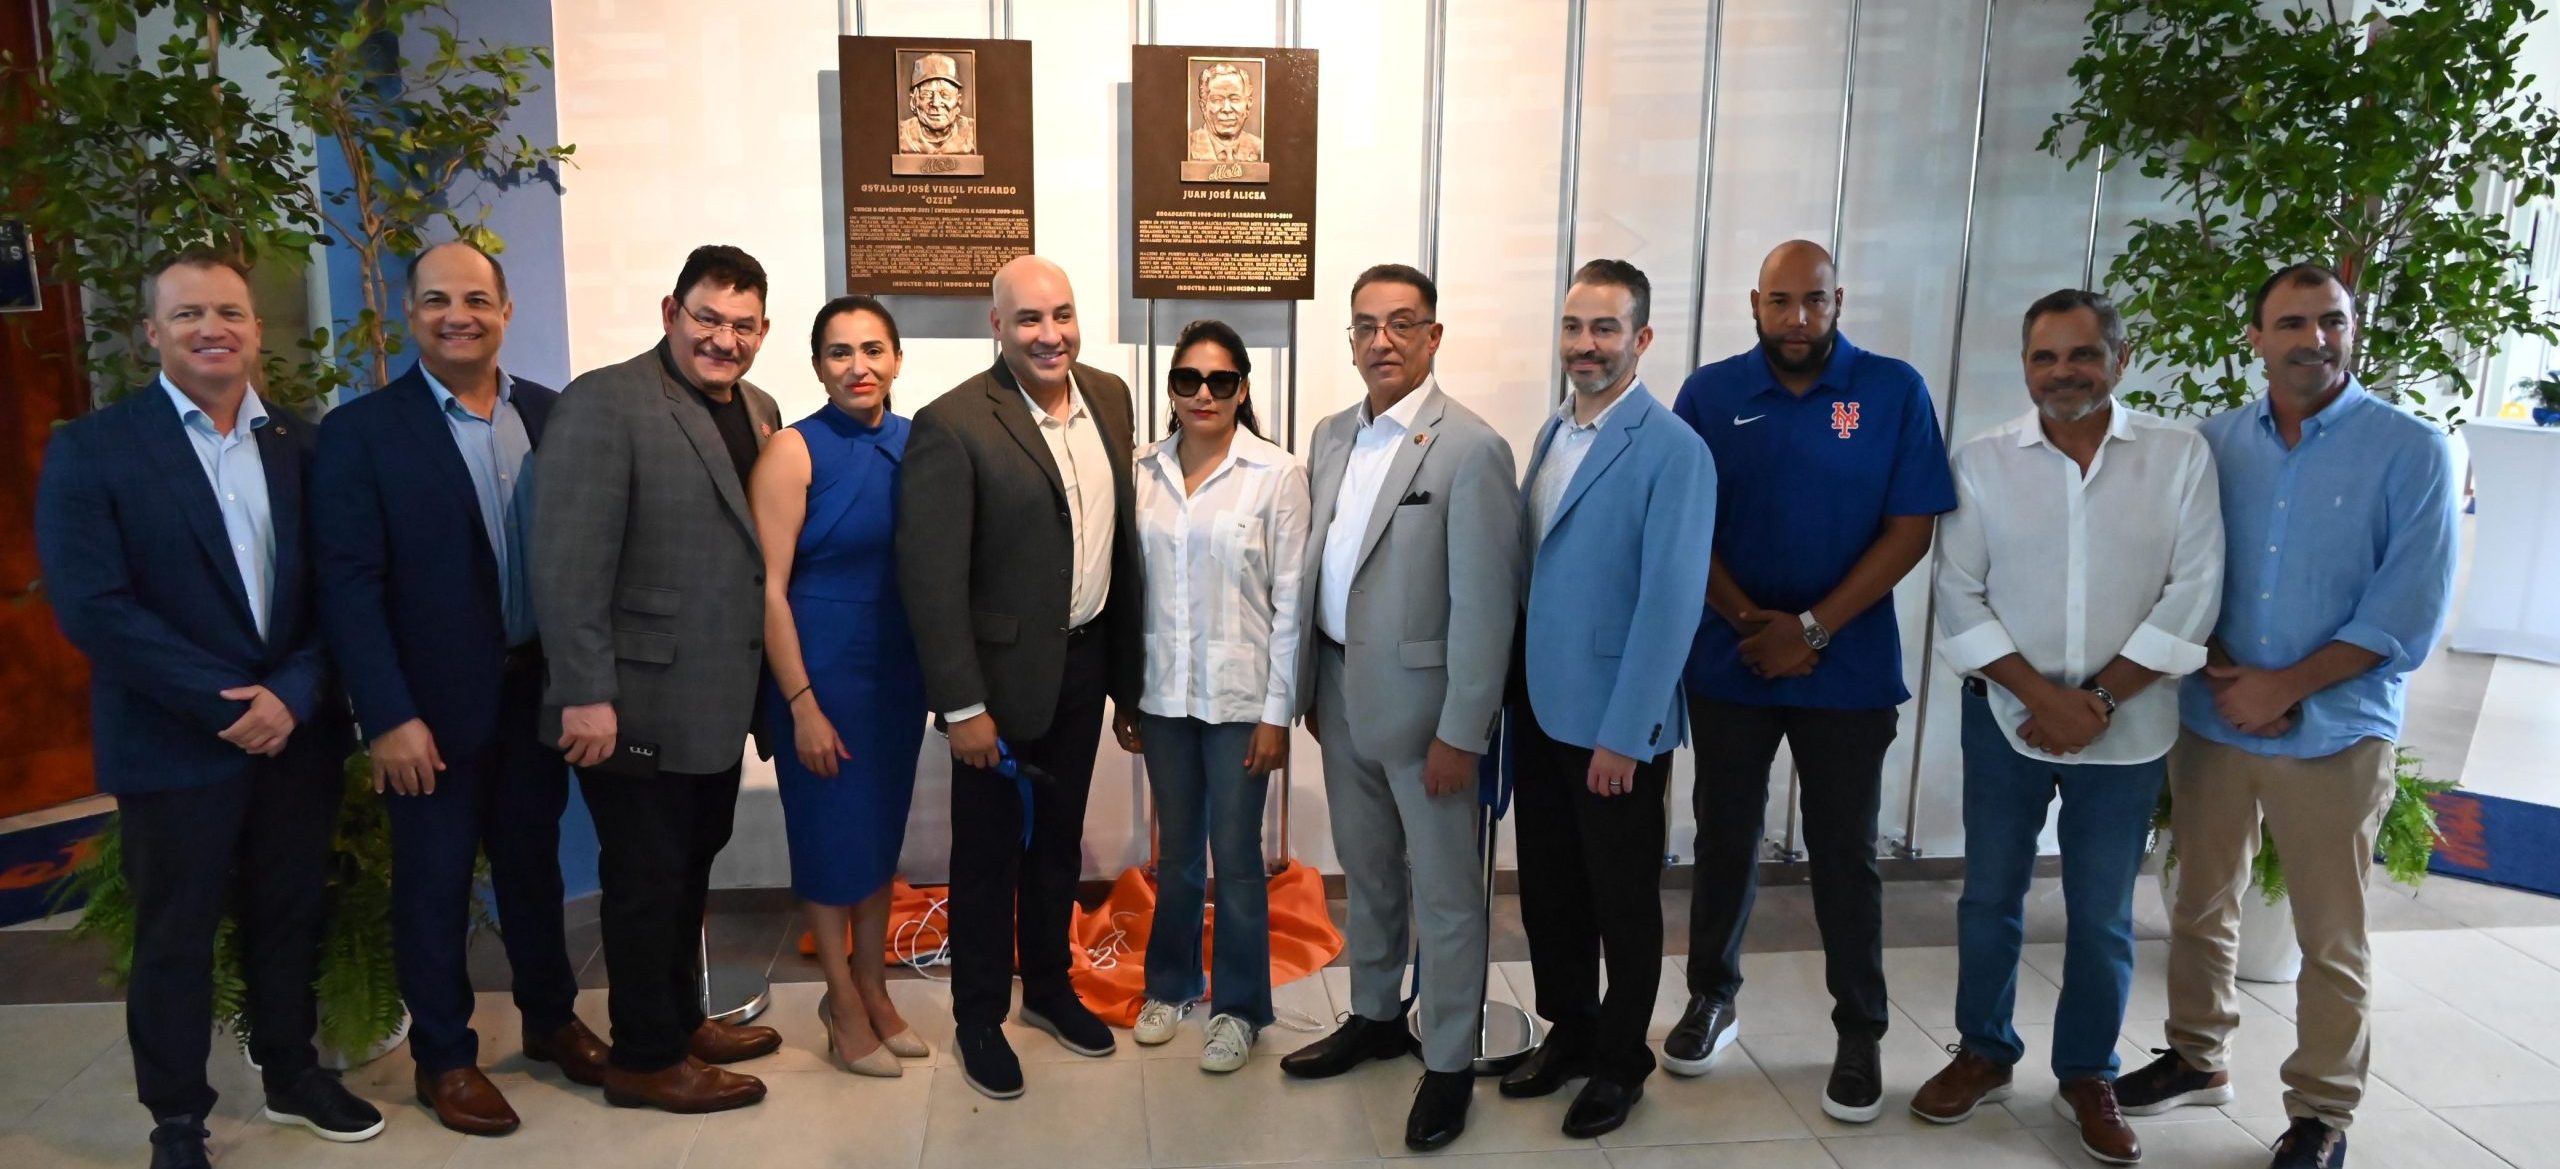 Osvaldo Virgil y José Alicea primeros exaltados al Salón de la Fama  Latinoamericano de Los Mets – El Nuevo Diario (República Dominicana)